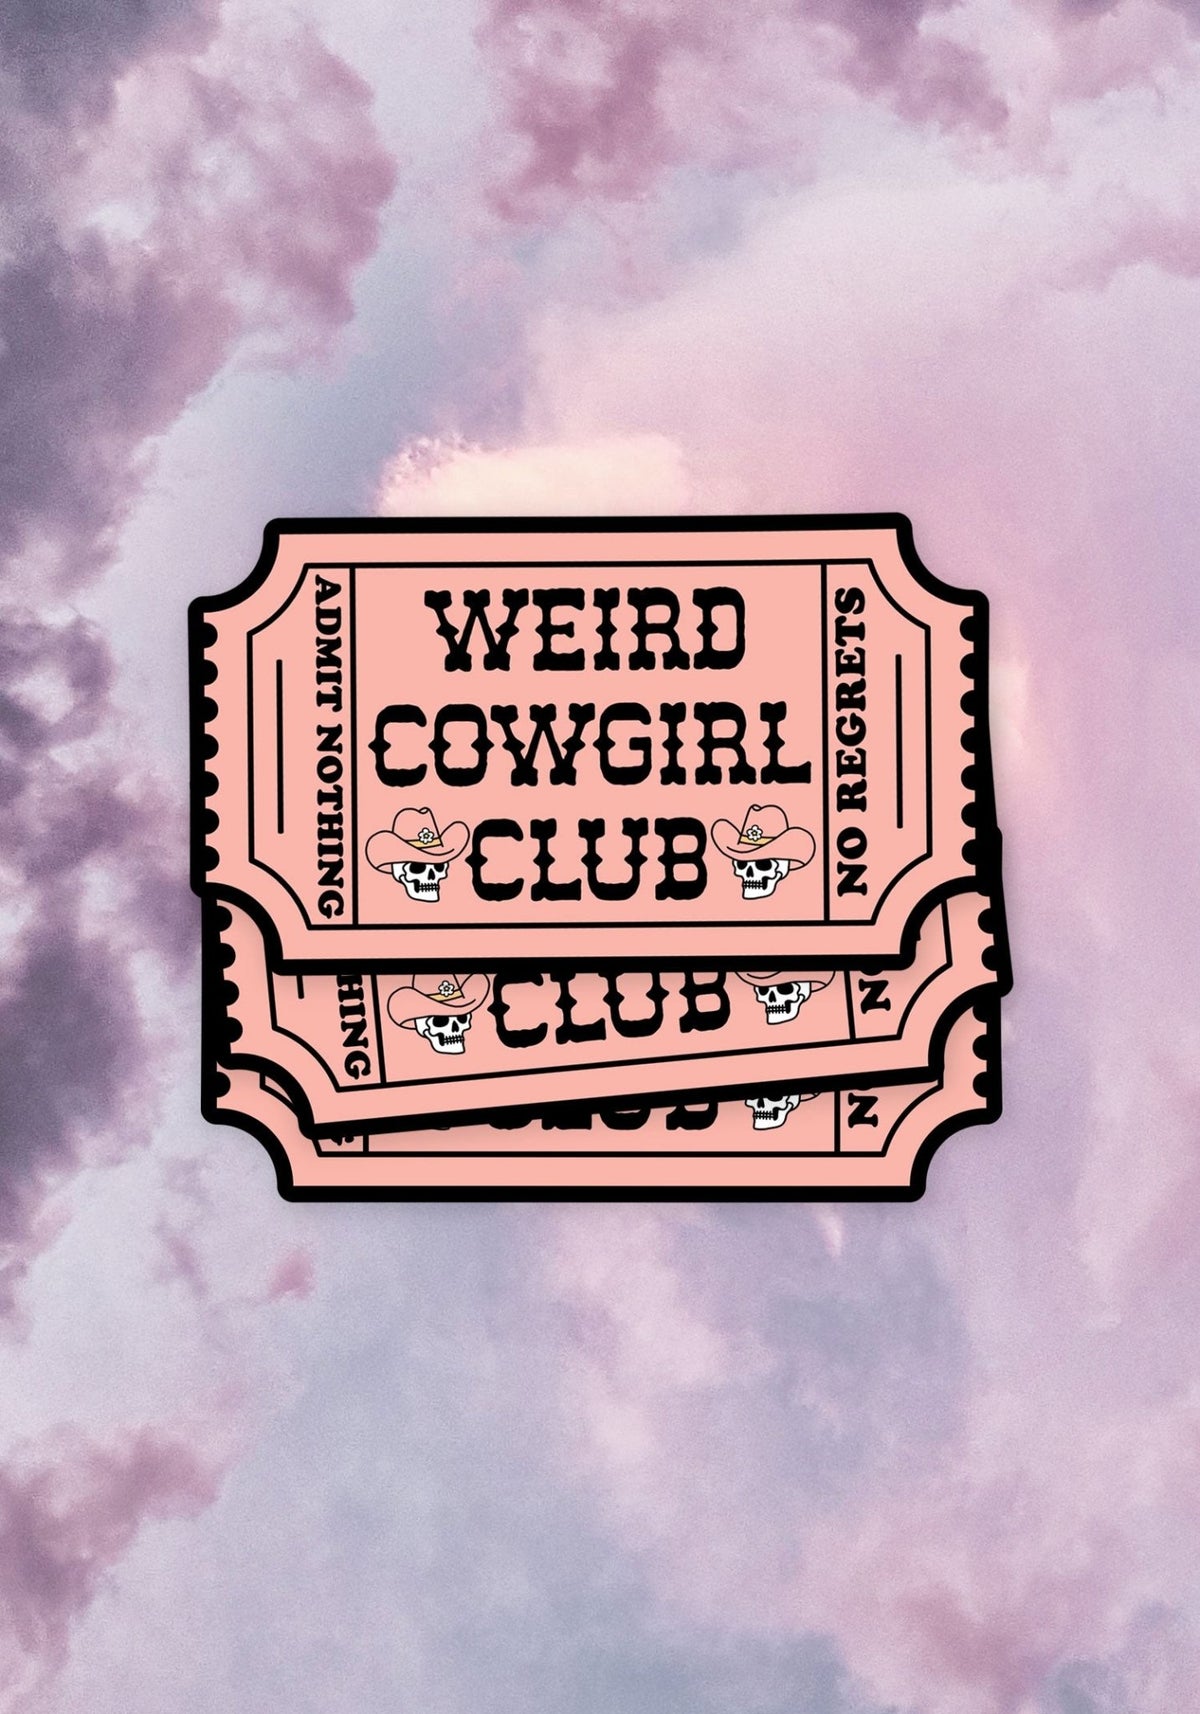 Weird Cowgirl Club Sticker by kaeraz cowboy cowboy hat cowgirl